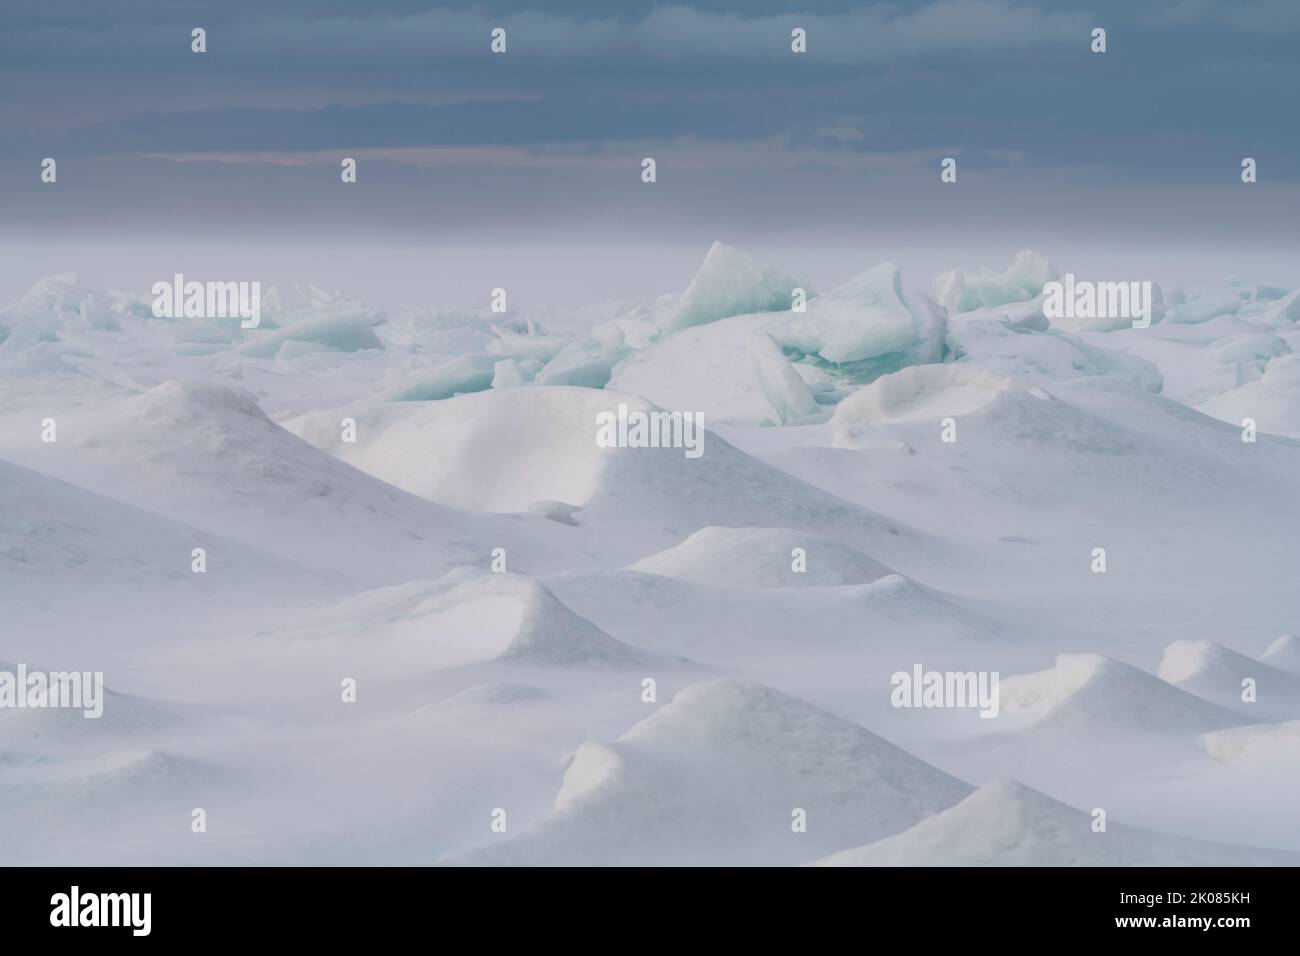 Il vento sta soffiando la neve sulla superficie della Green Bay, le zacchette di ghiaccio del lago Michigan ammorbidendo i bordi taglienti del ghiaccio e creando un altro mondo Foto Stock